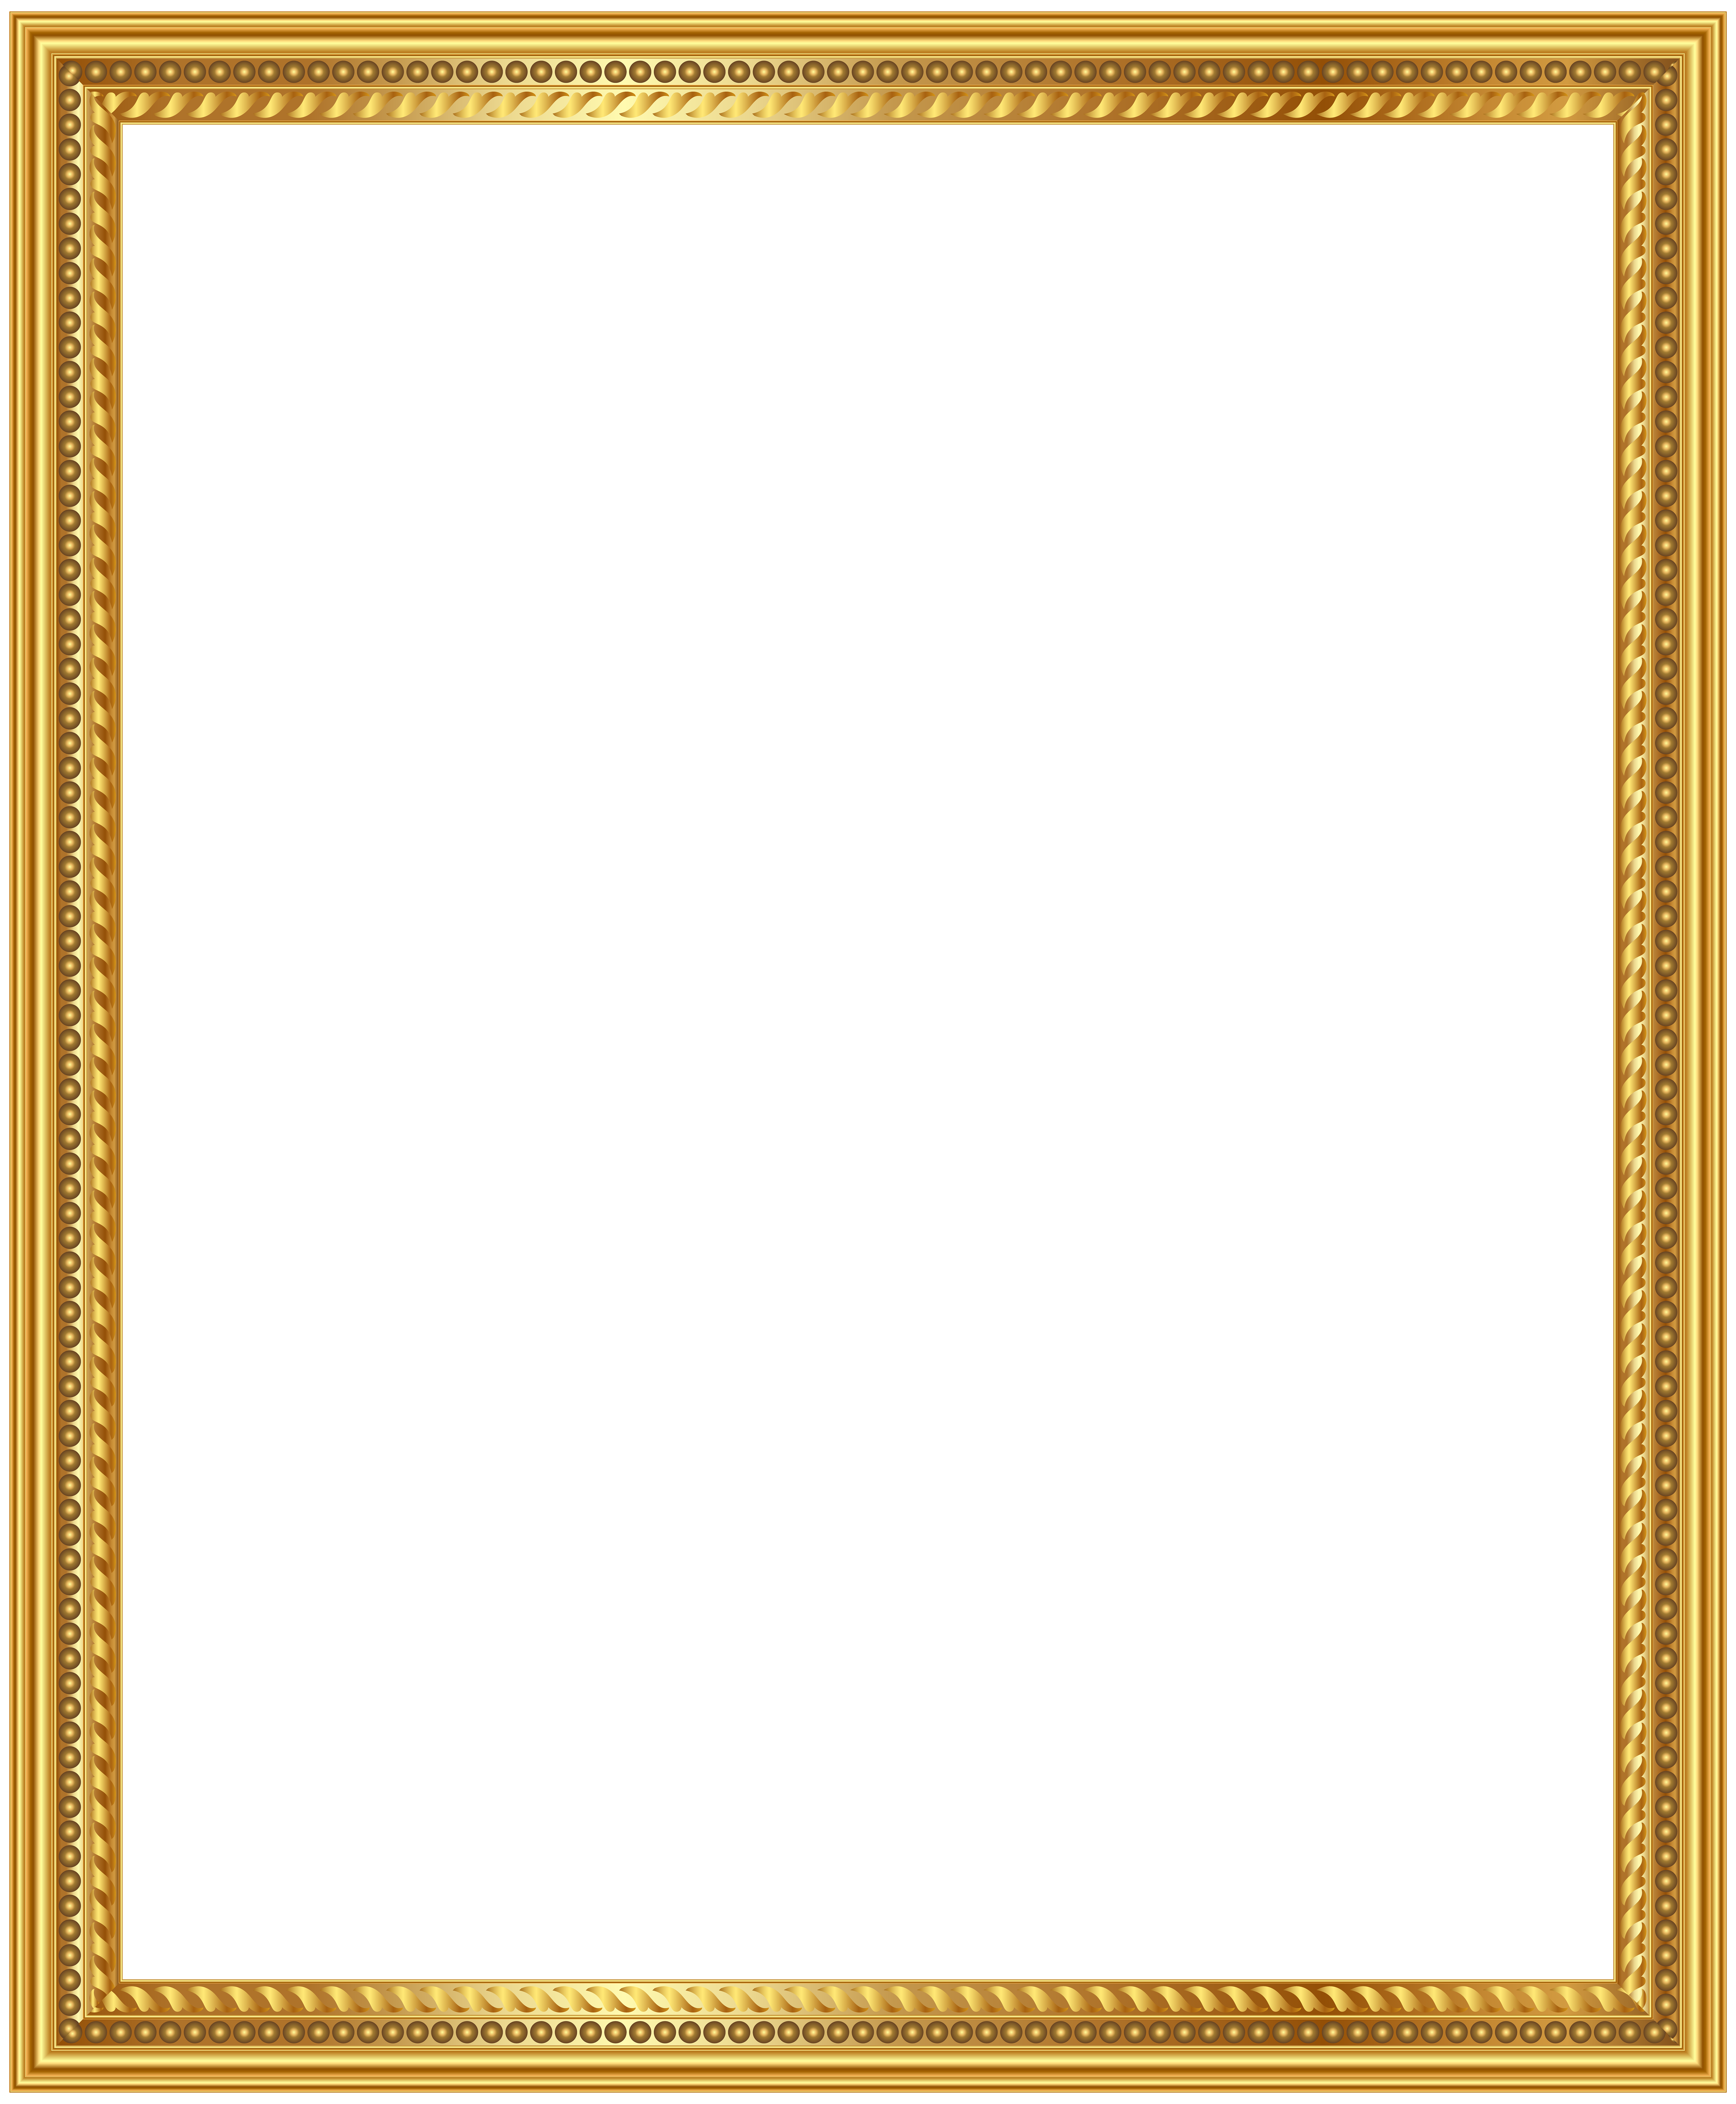 Gold Deco Frame Png Clip Art Image Yopriceville High Large Frames Black